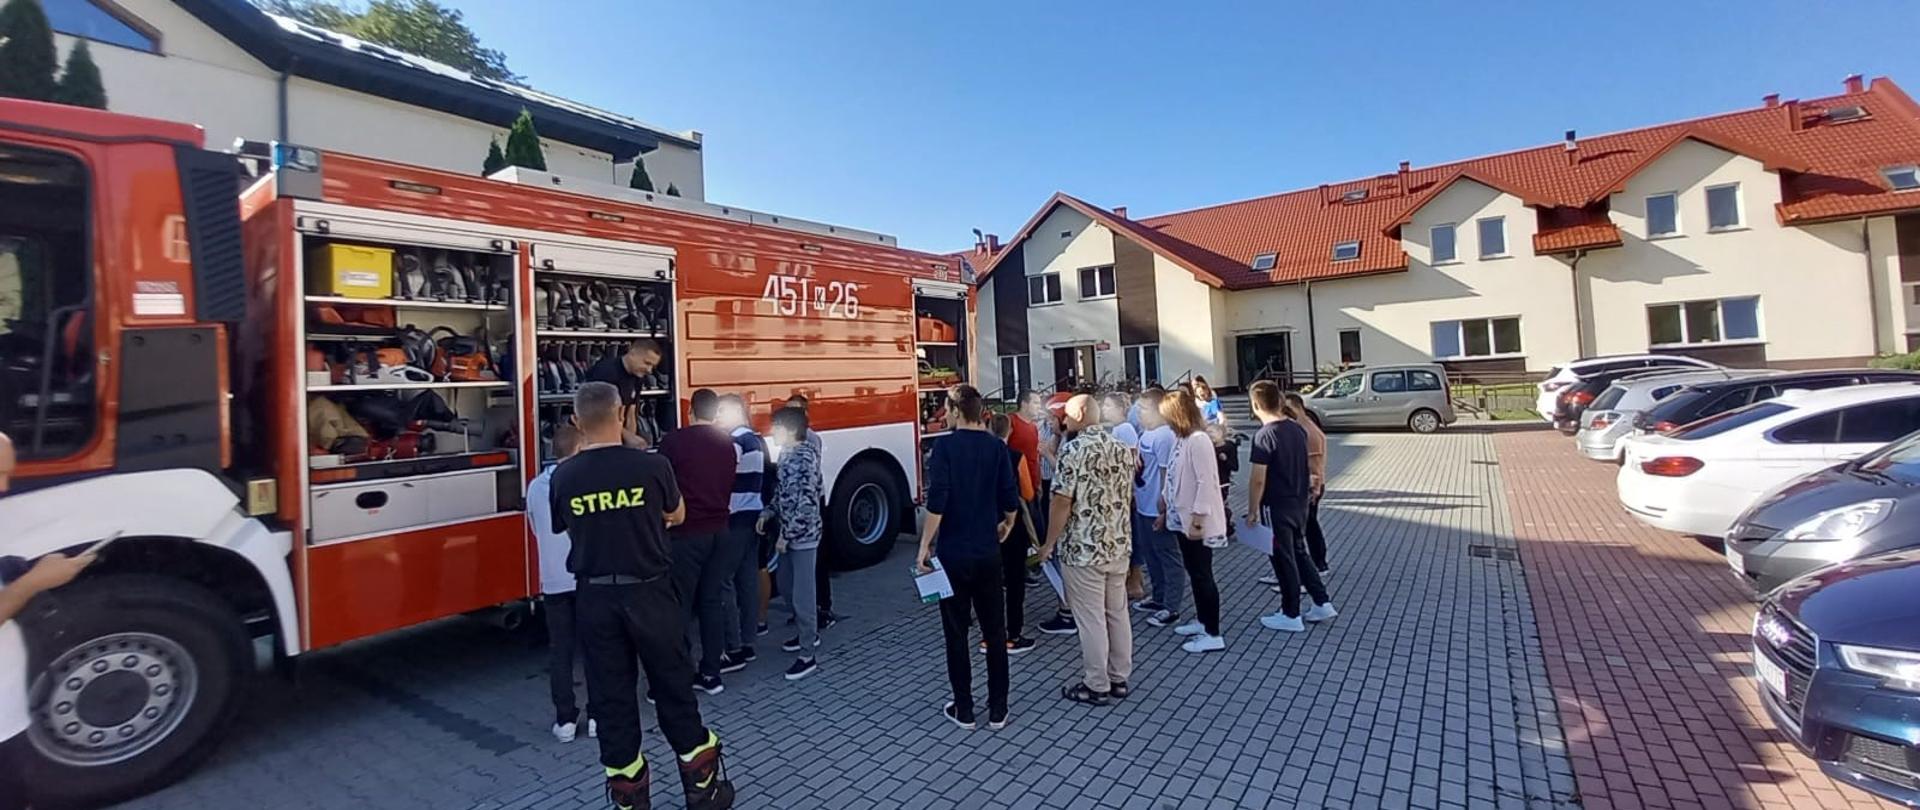 Pokaz wozu i wyposażenia samochodu strażackiego tutejszej JRG Limanowa. 